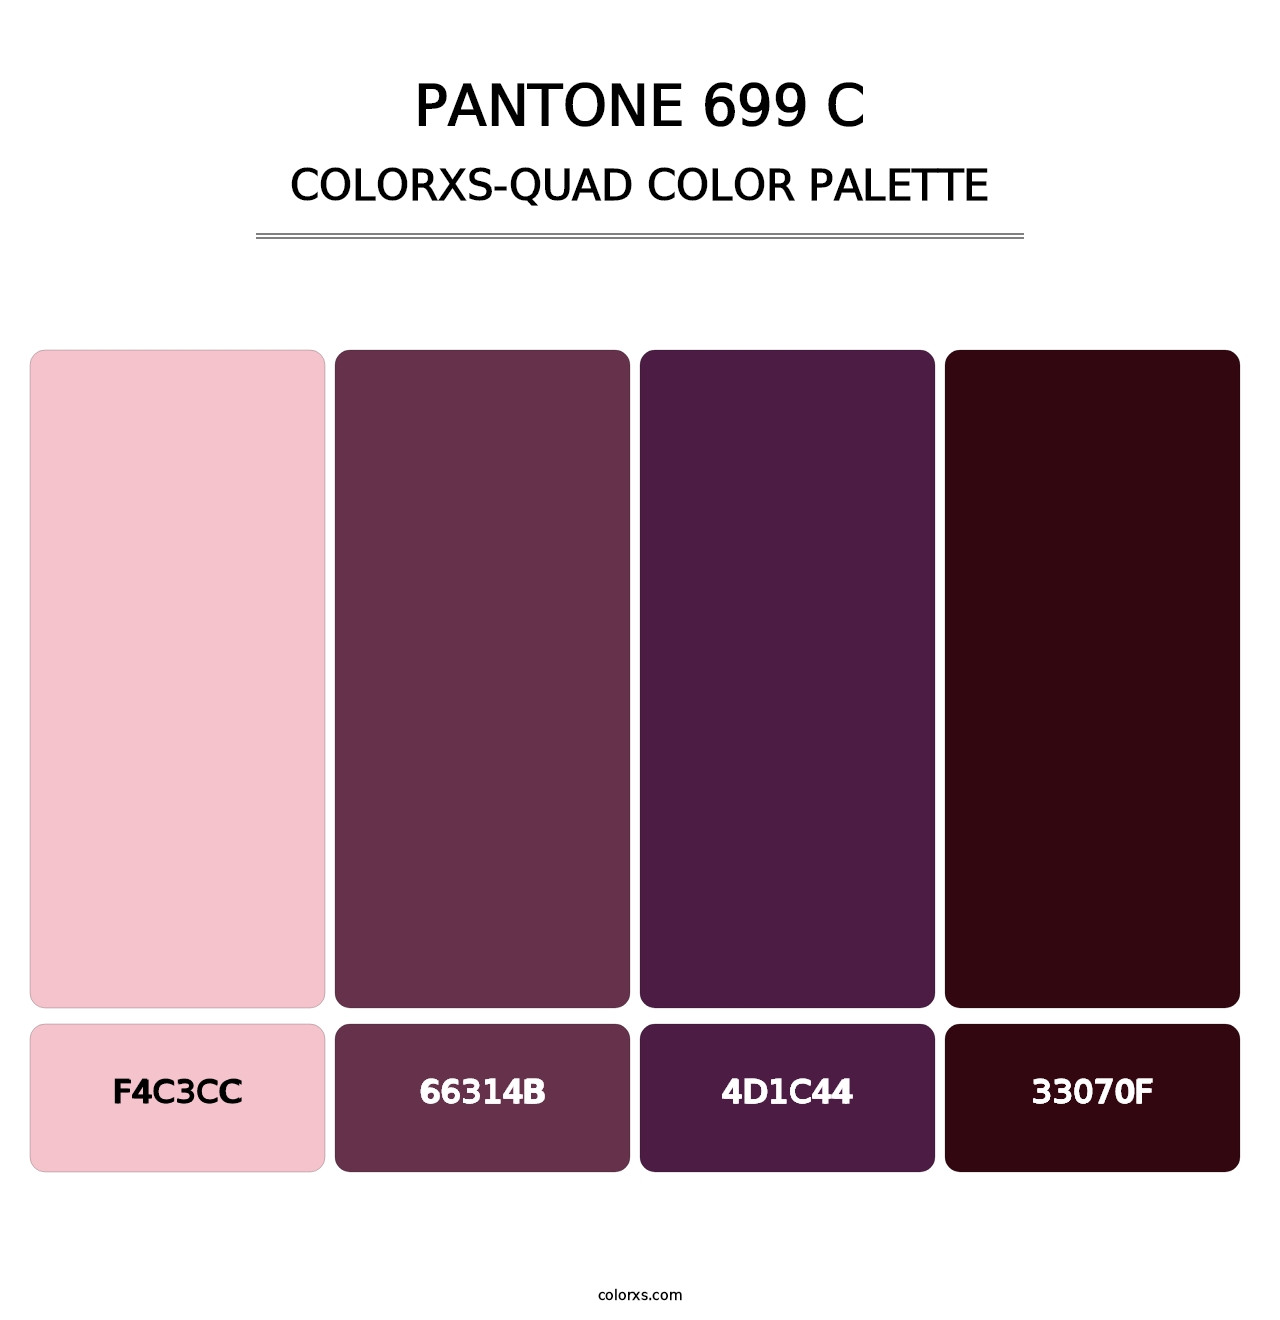 PANTONE 699 C - Colorxs Quad Palette